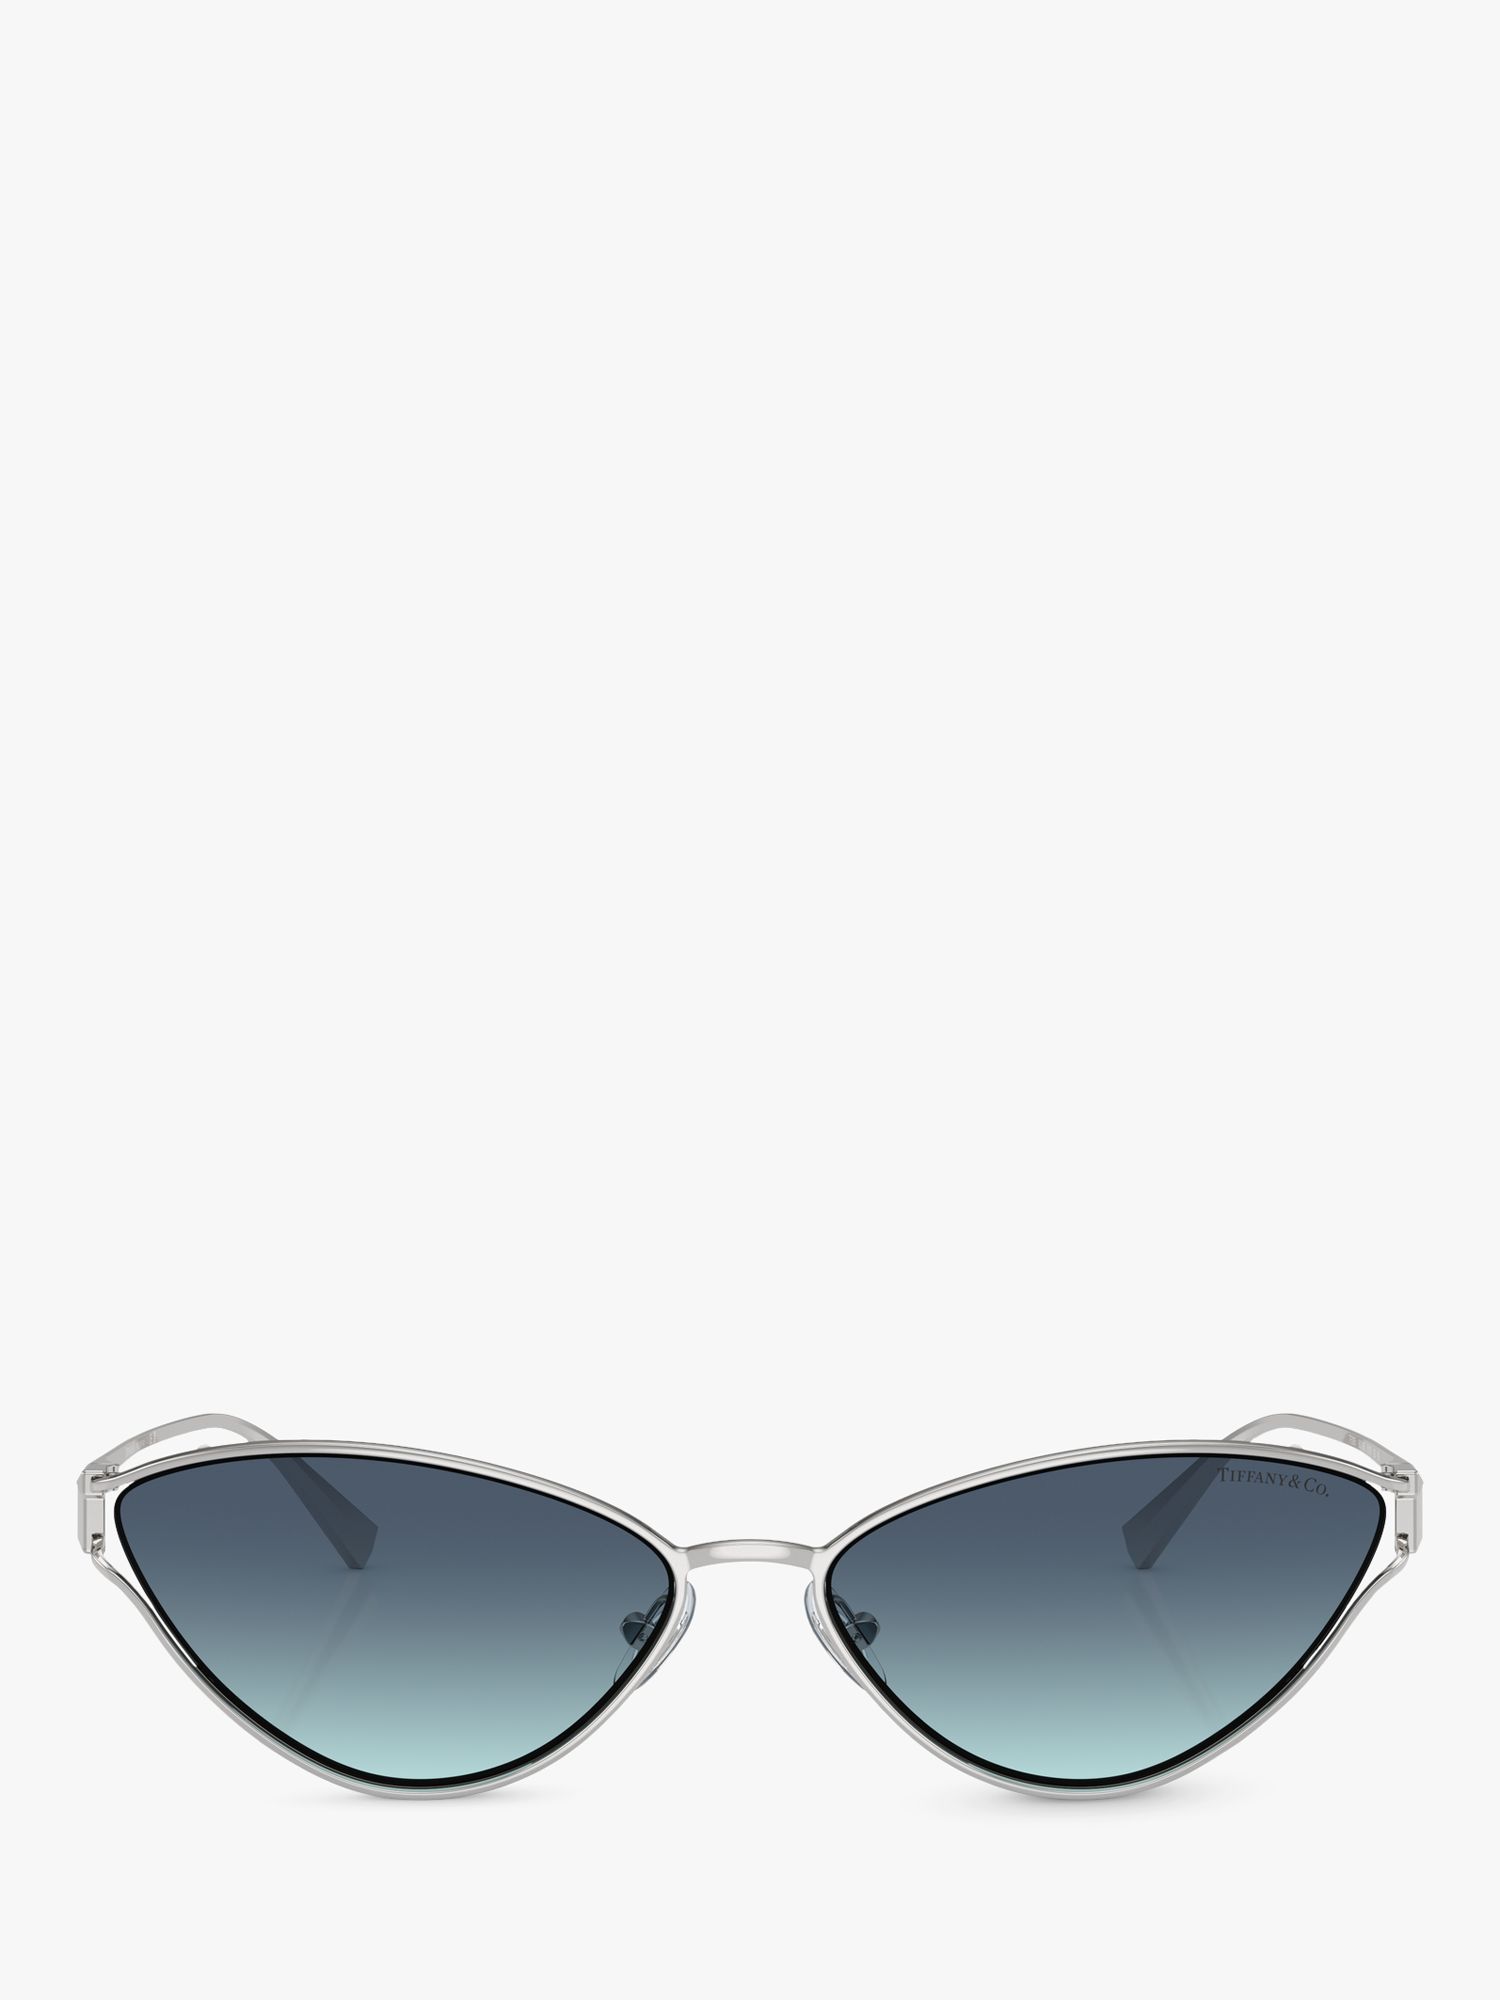 Tiffany & Co TF3095 Women's Cat's Eye Sunglasses, Silver/Blue Gradient